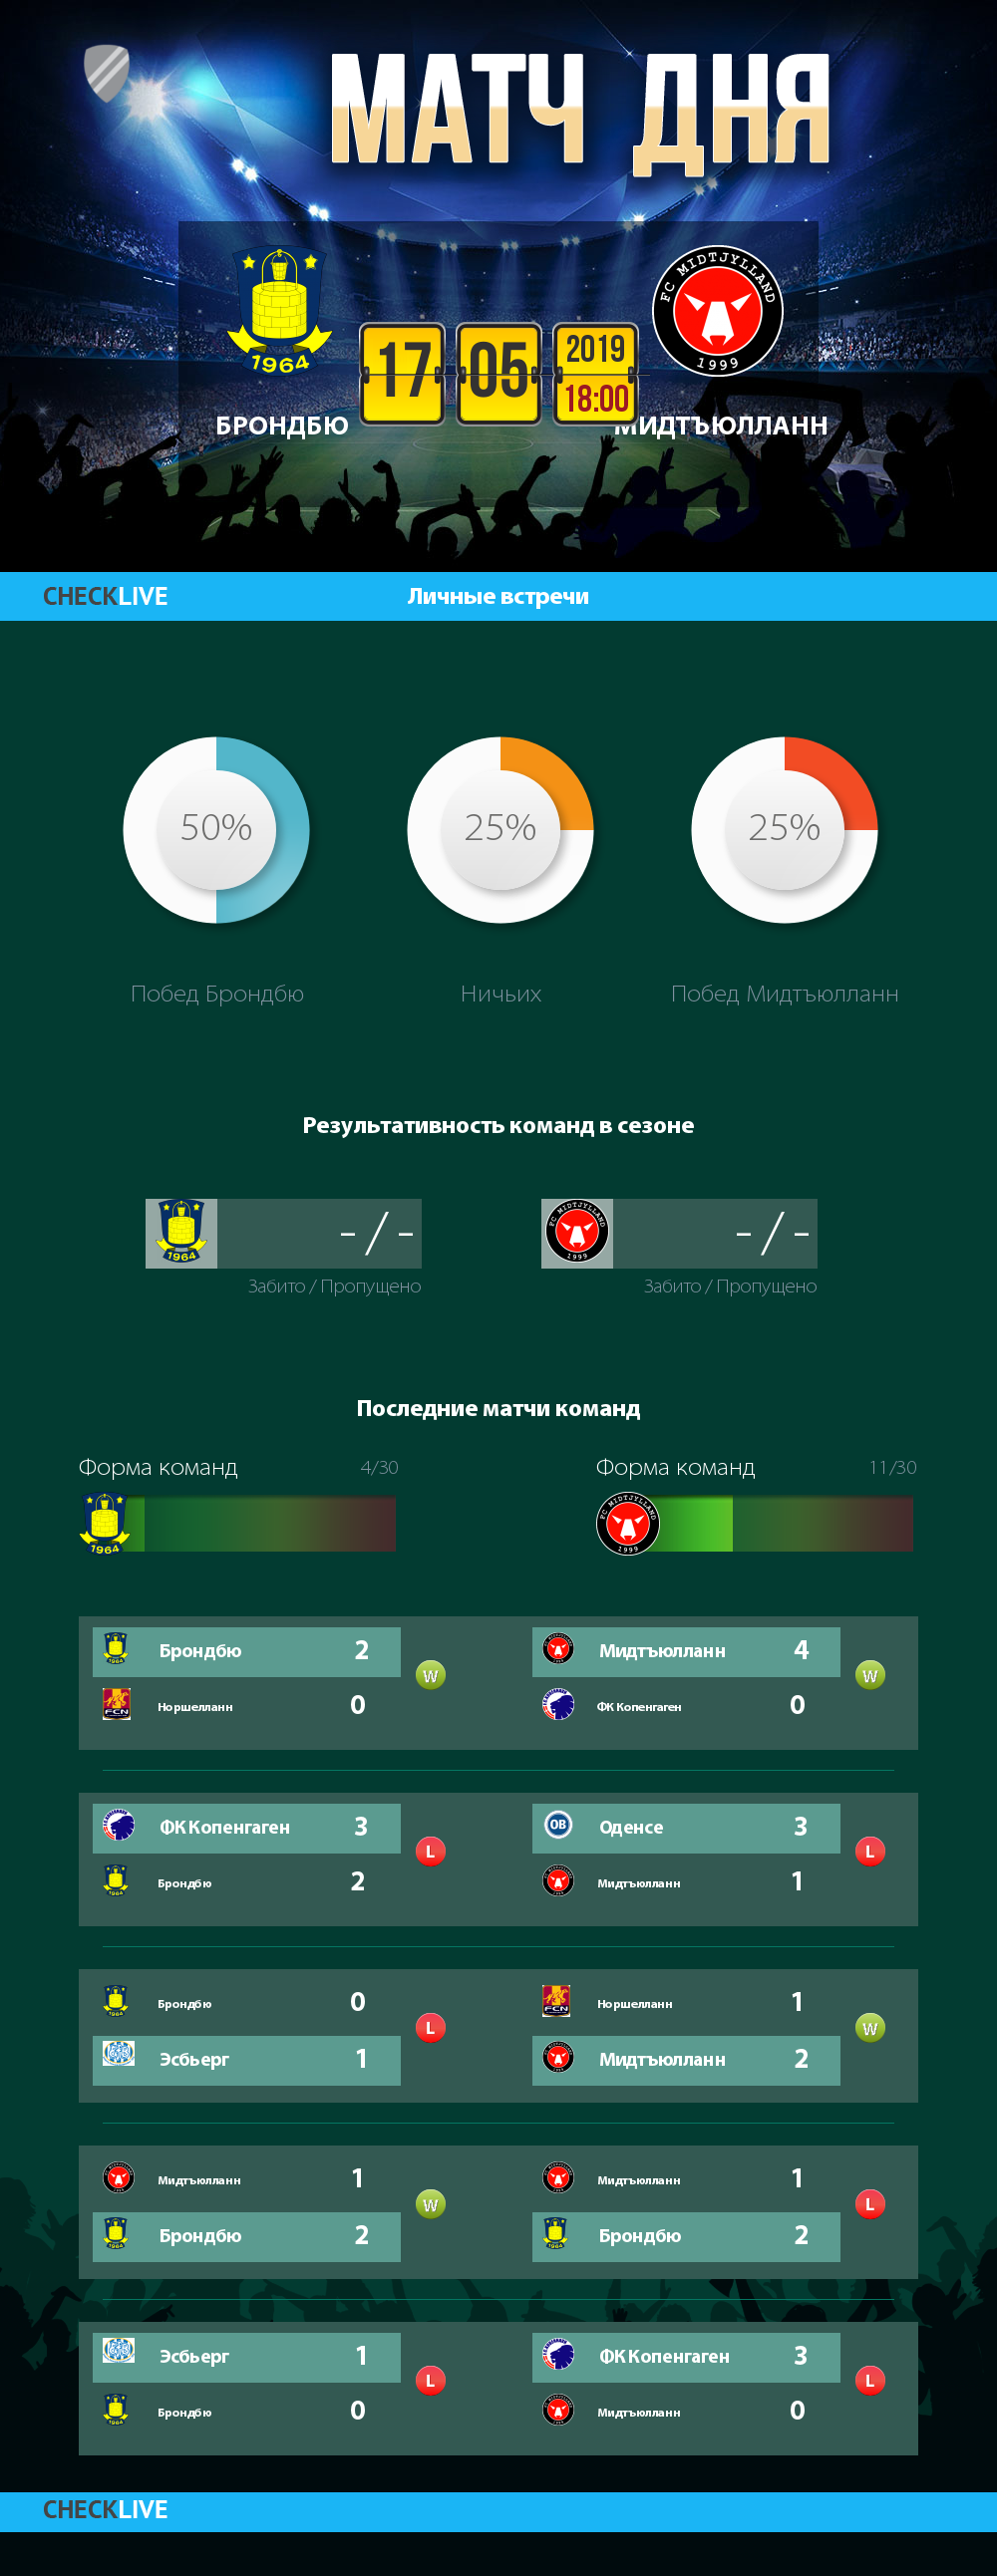 Инфографика Брондбю и Мидтъюлланн матч дня 17.05.2019